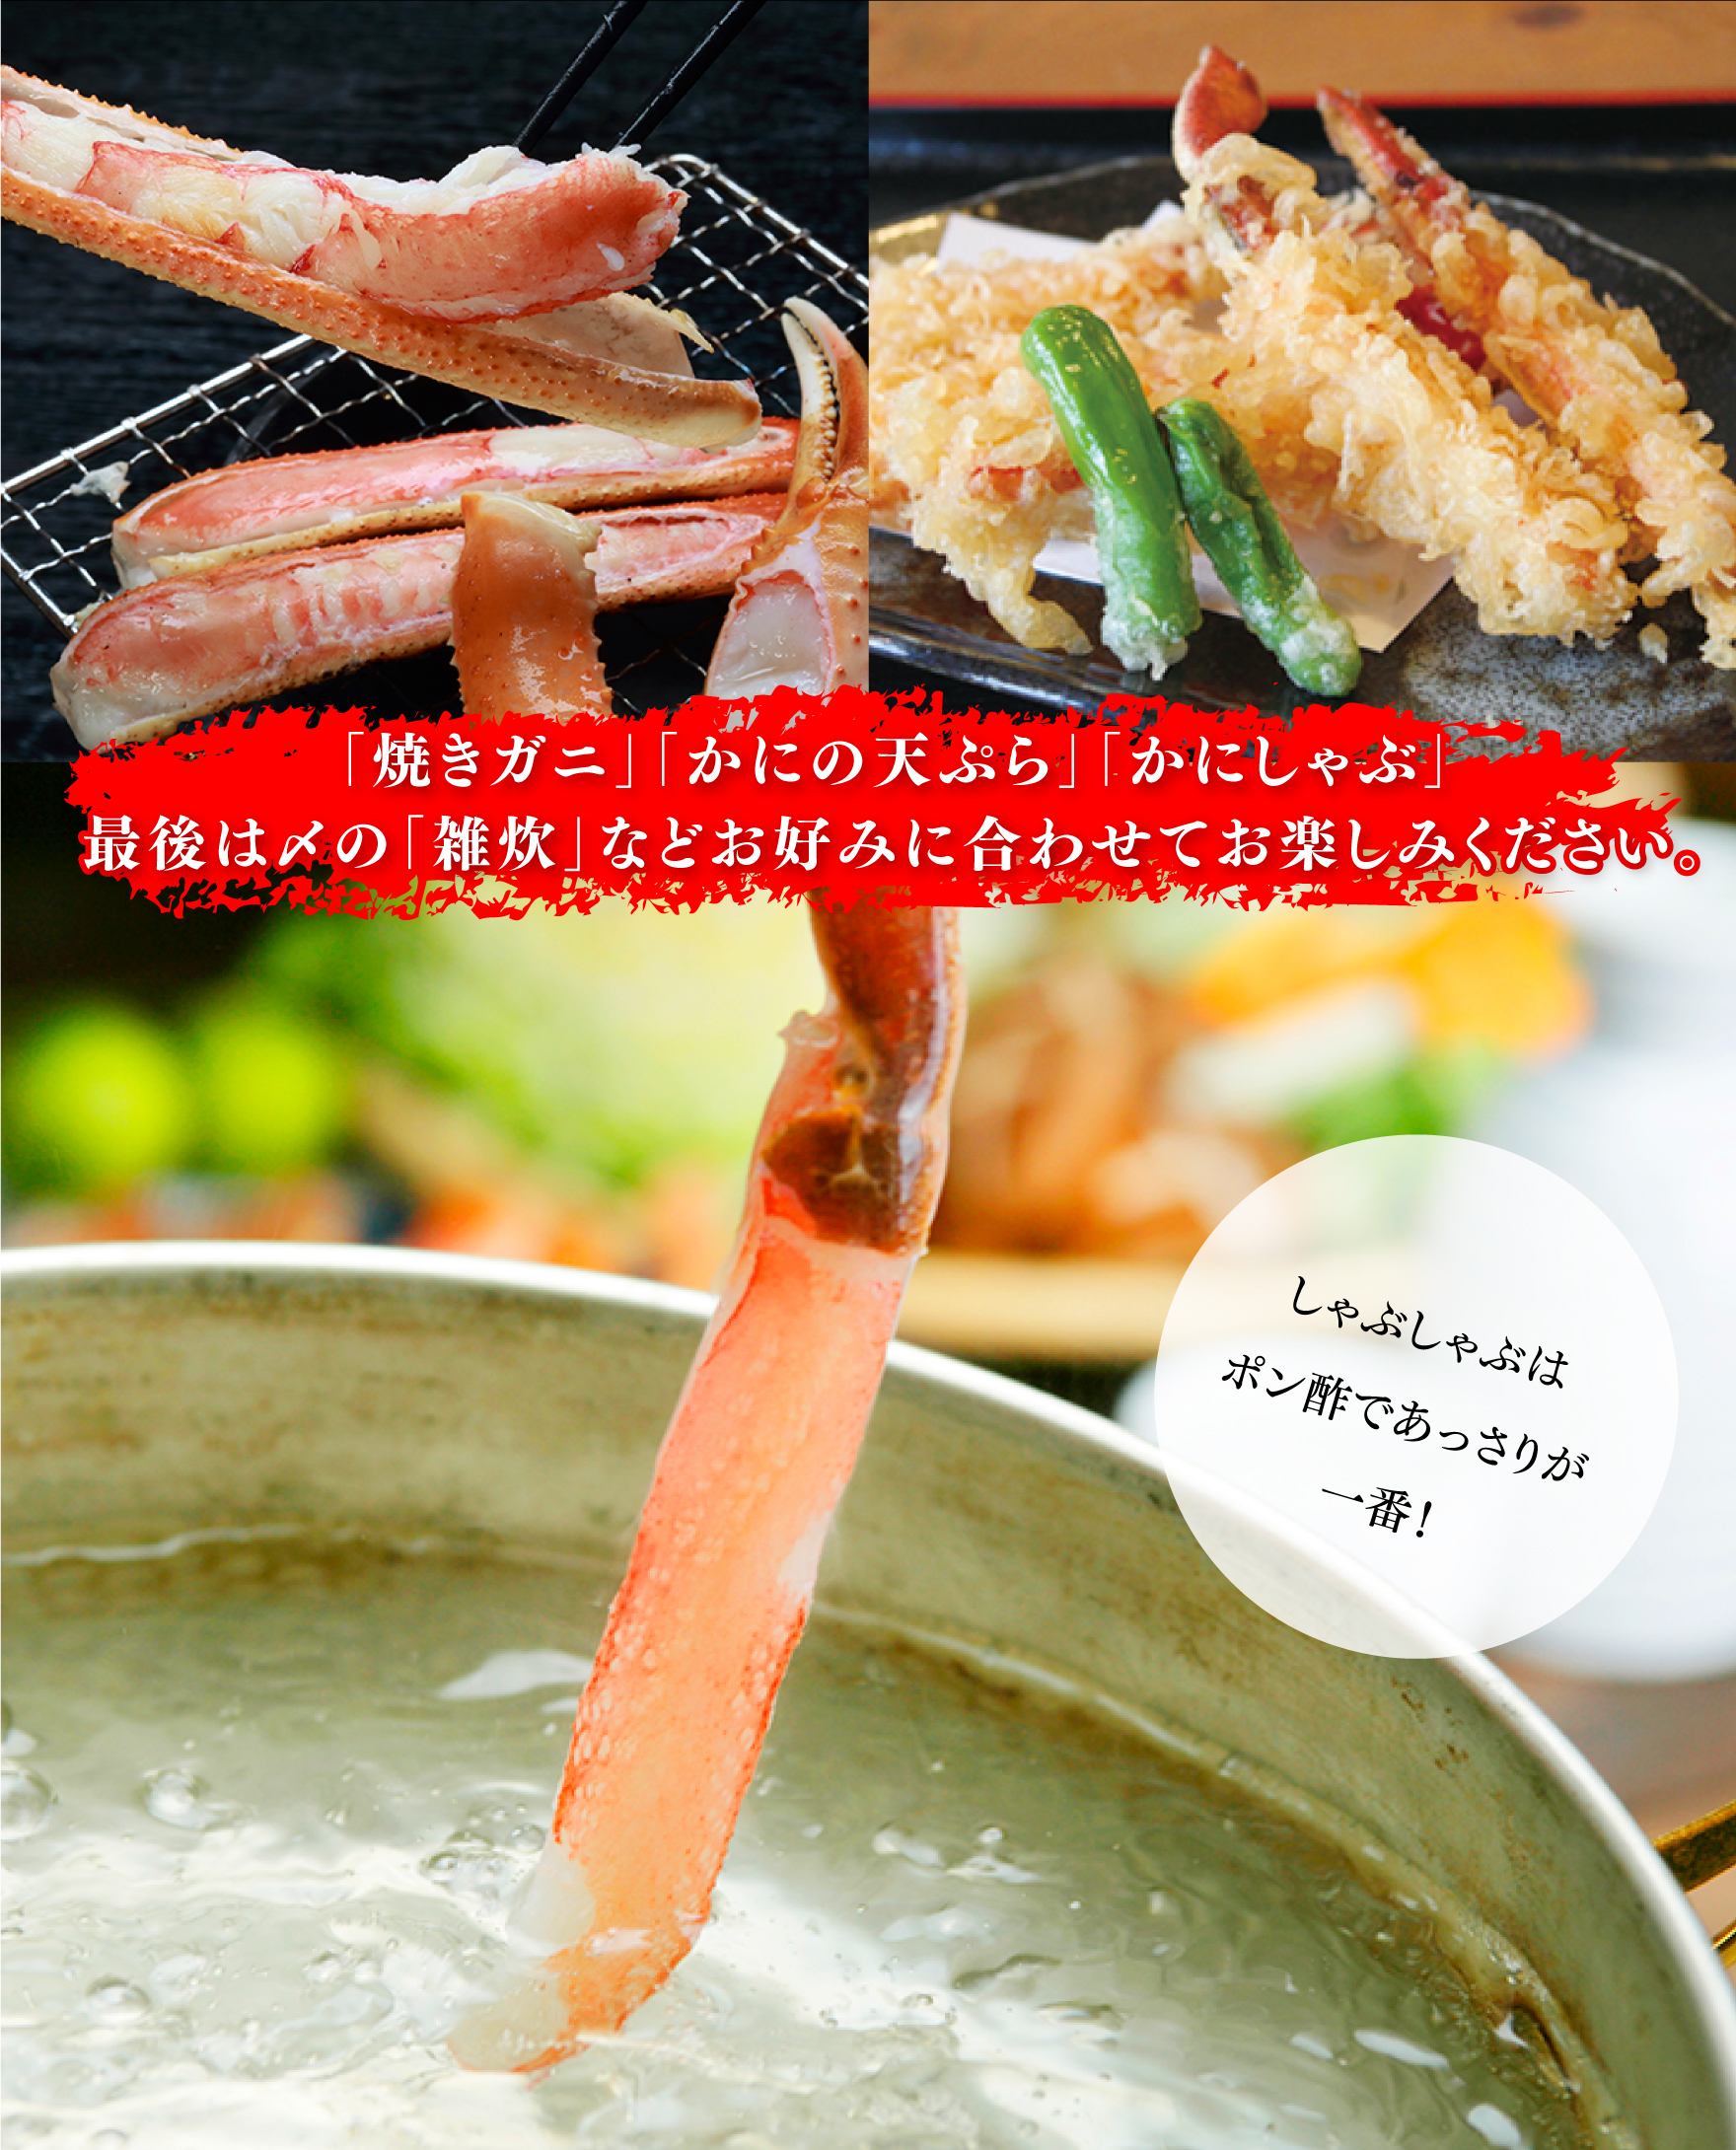 焼きガニ、カニの天ぷら、蟹しゃぶなどでお楽しみください